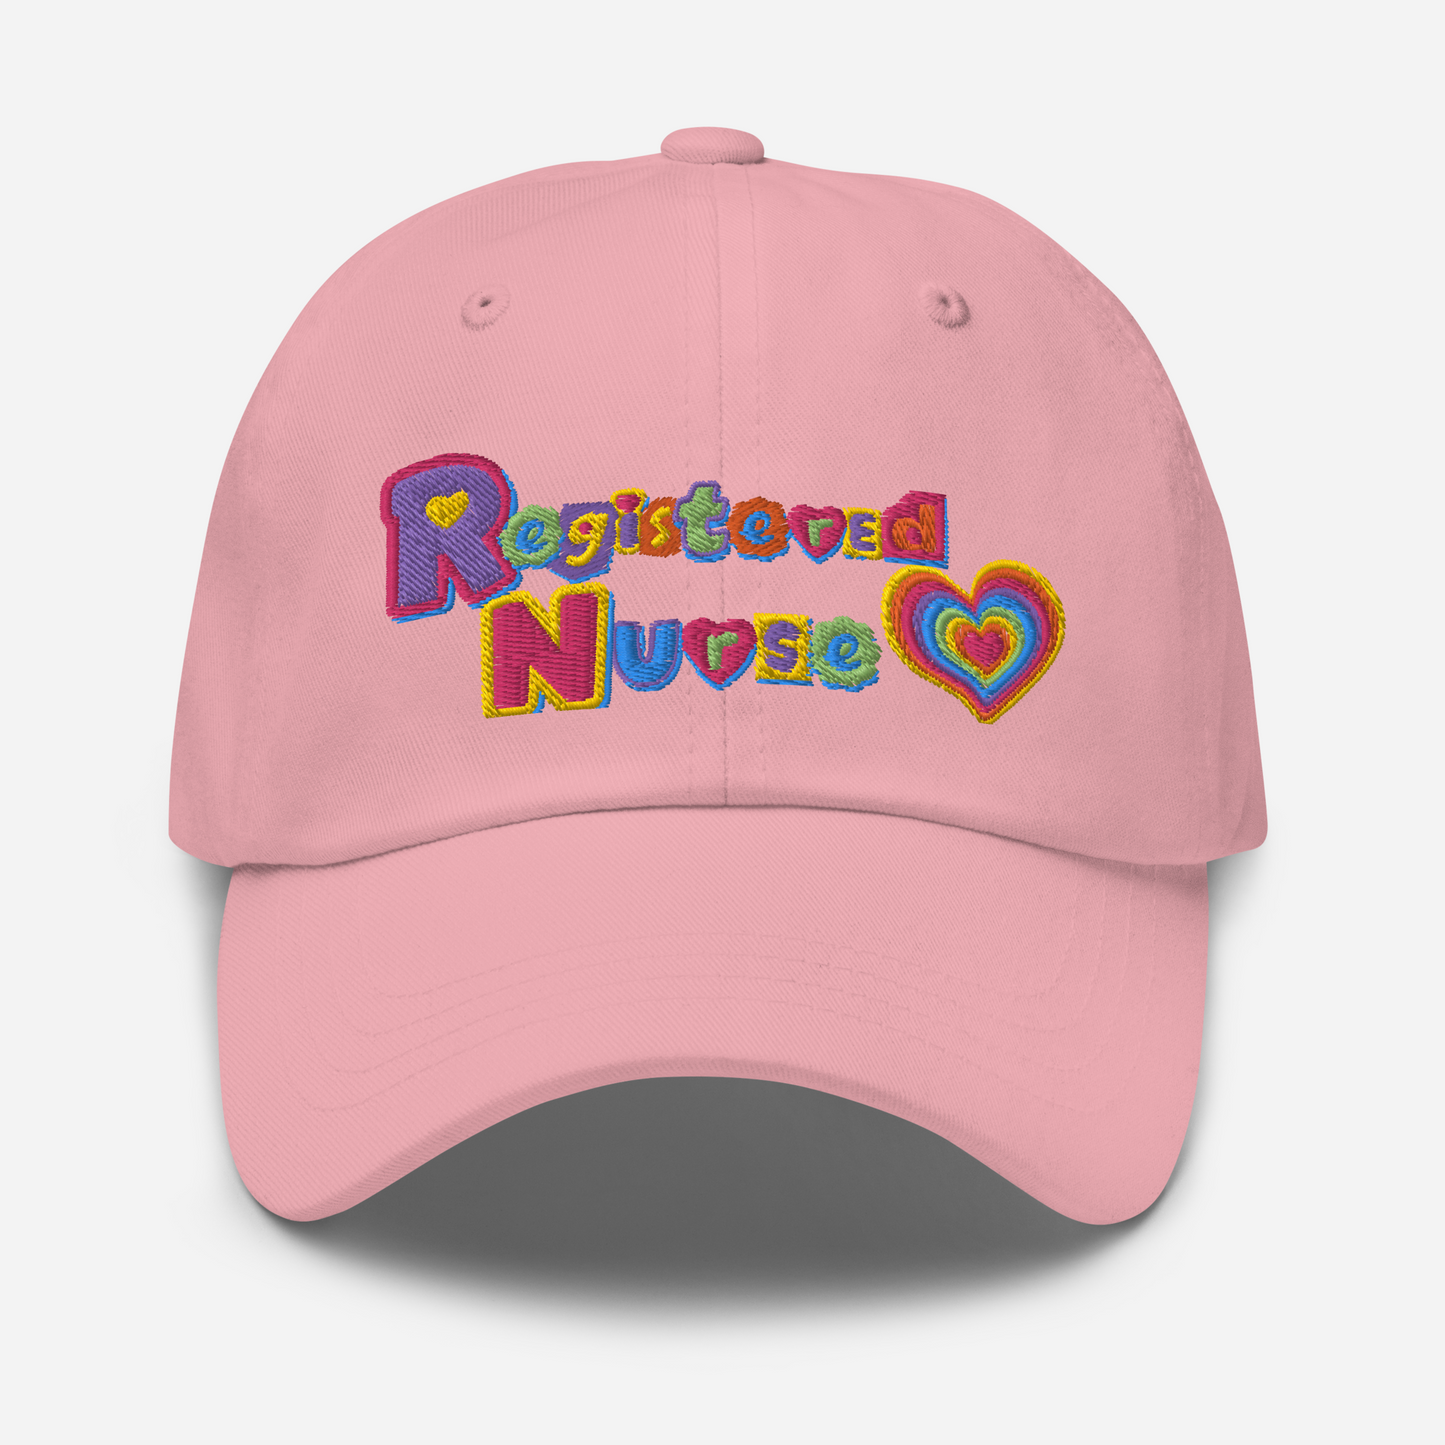 Registered Nurse Hat